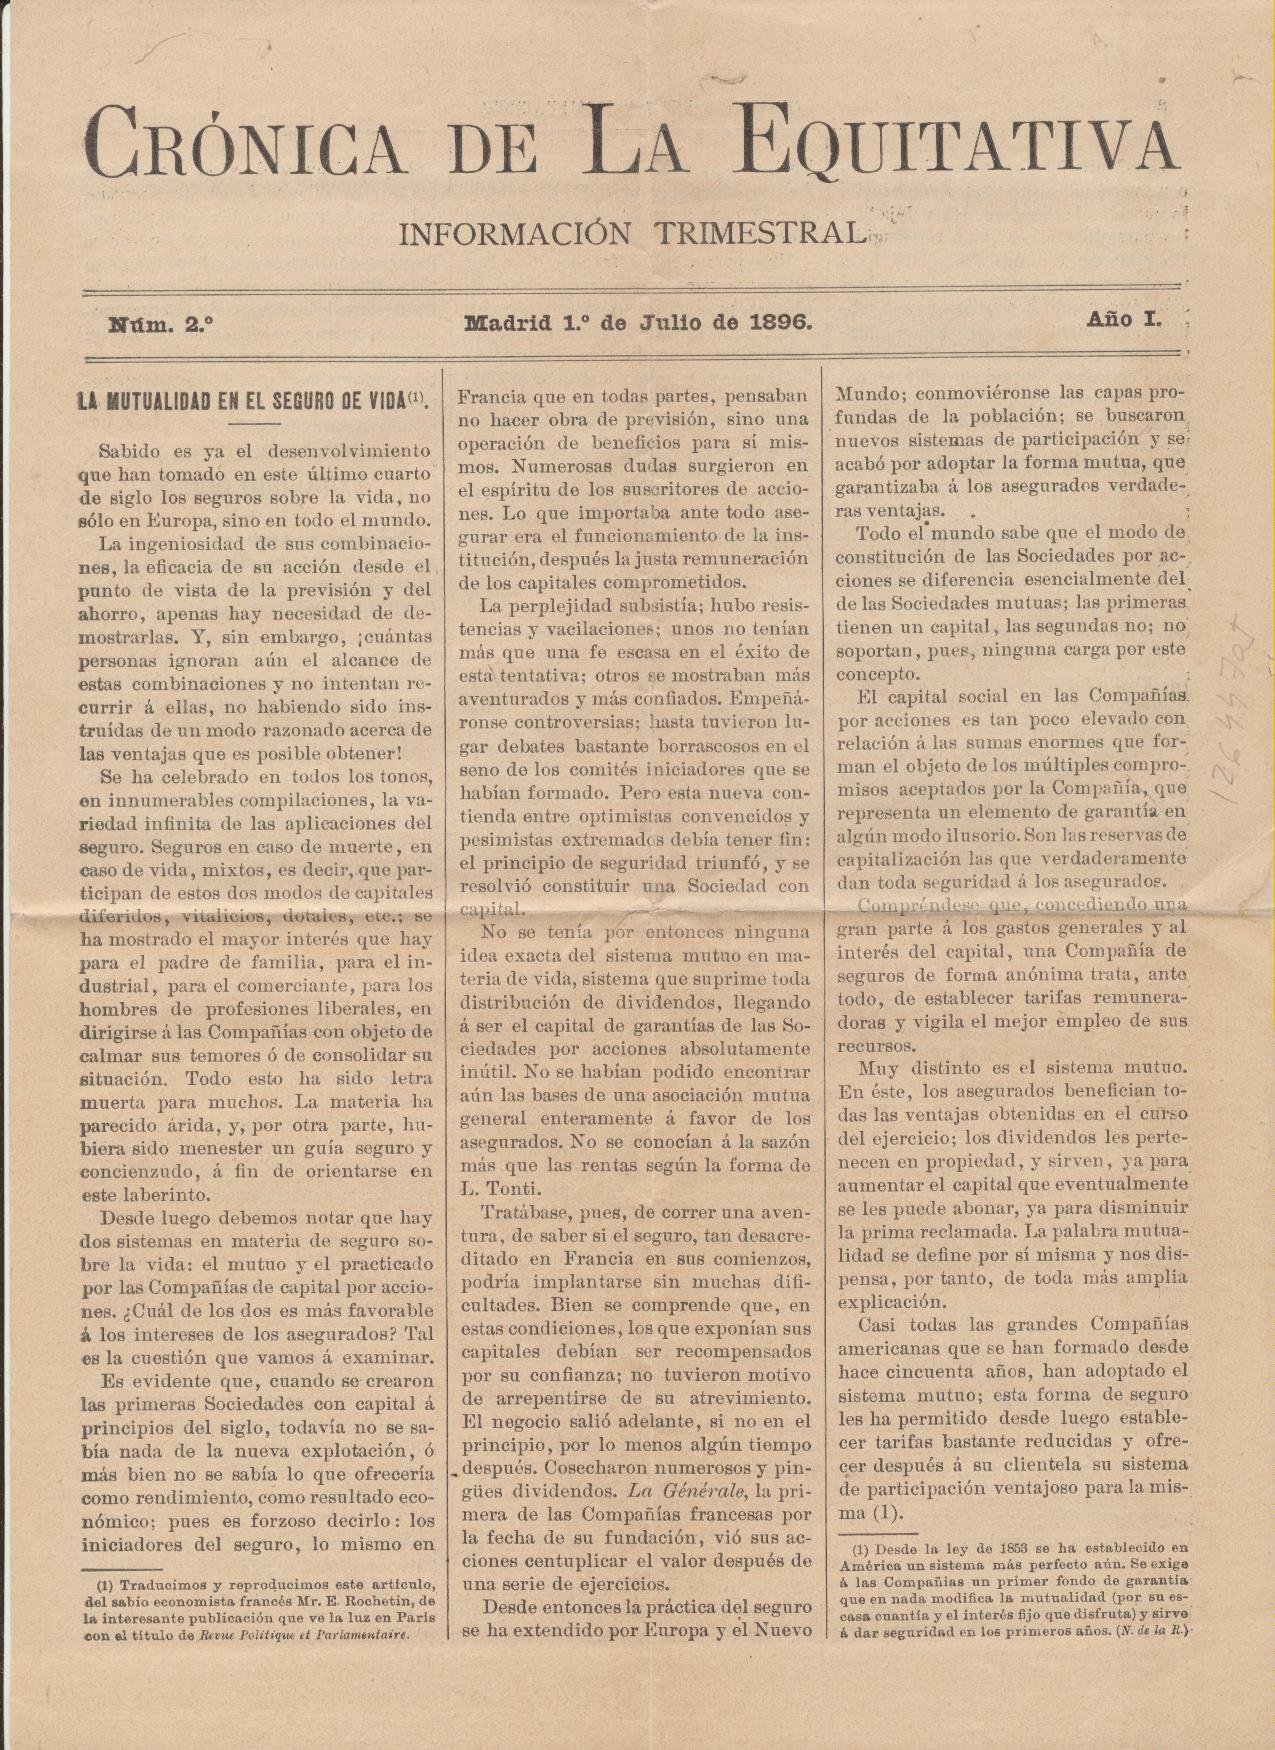 Crónica de la Equitativa (Compañía de Seguros) Información Trimestral. Madrid 1º de Julio de 1896